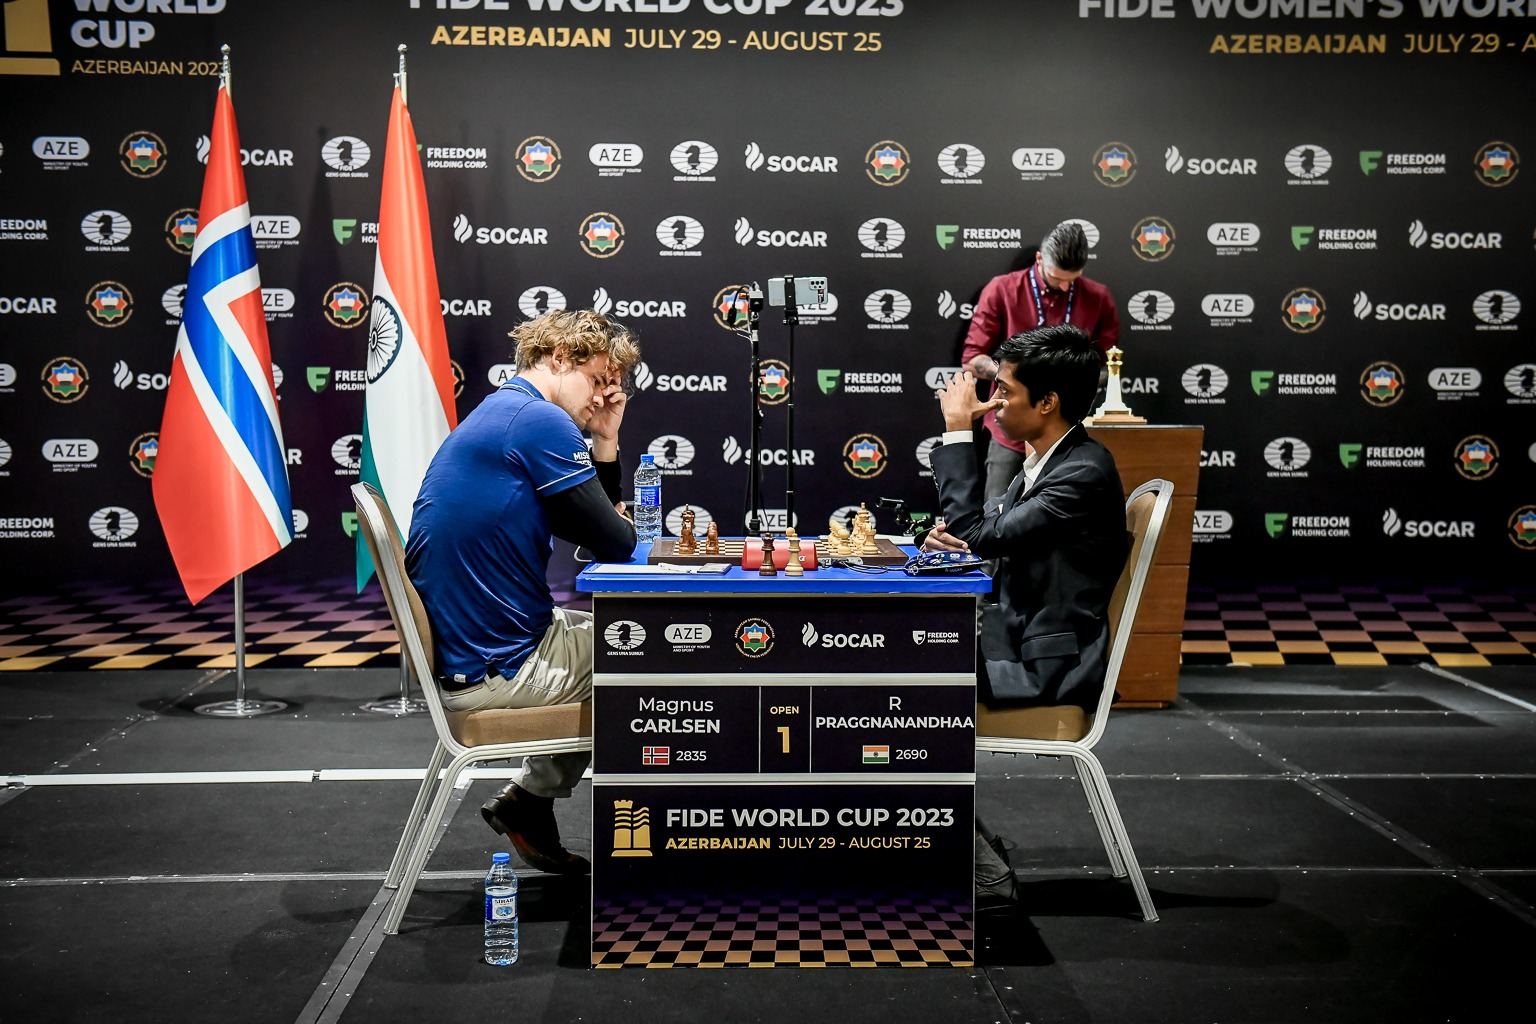 Первая партия финала Кубка мира по шахматам в Баку завершилась ничьей (ФОТО)